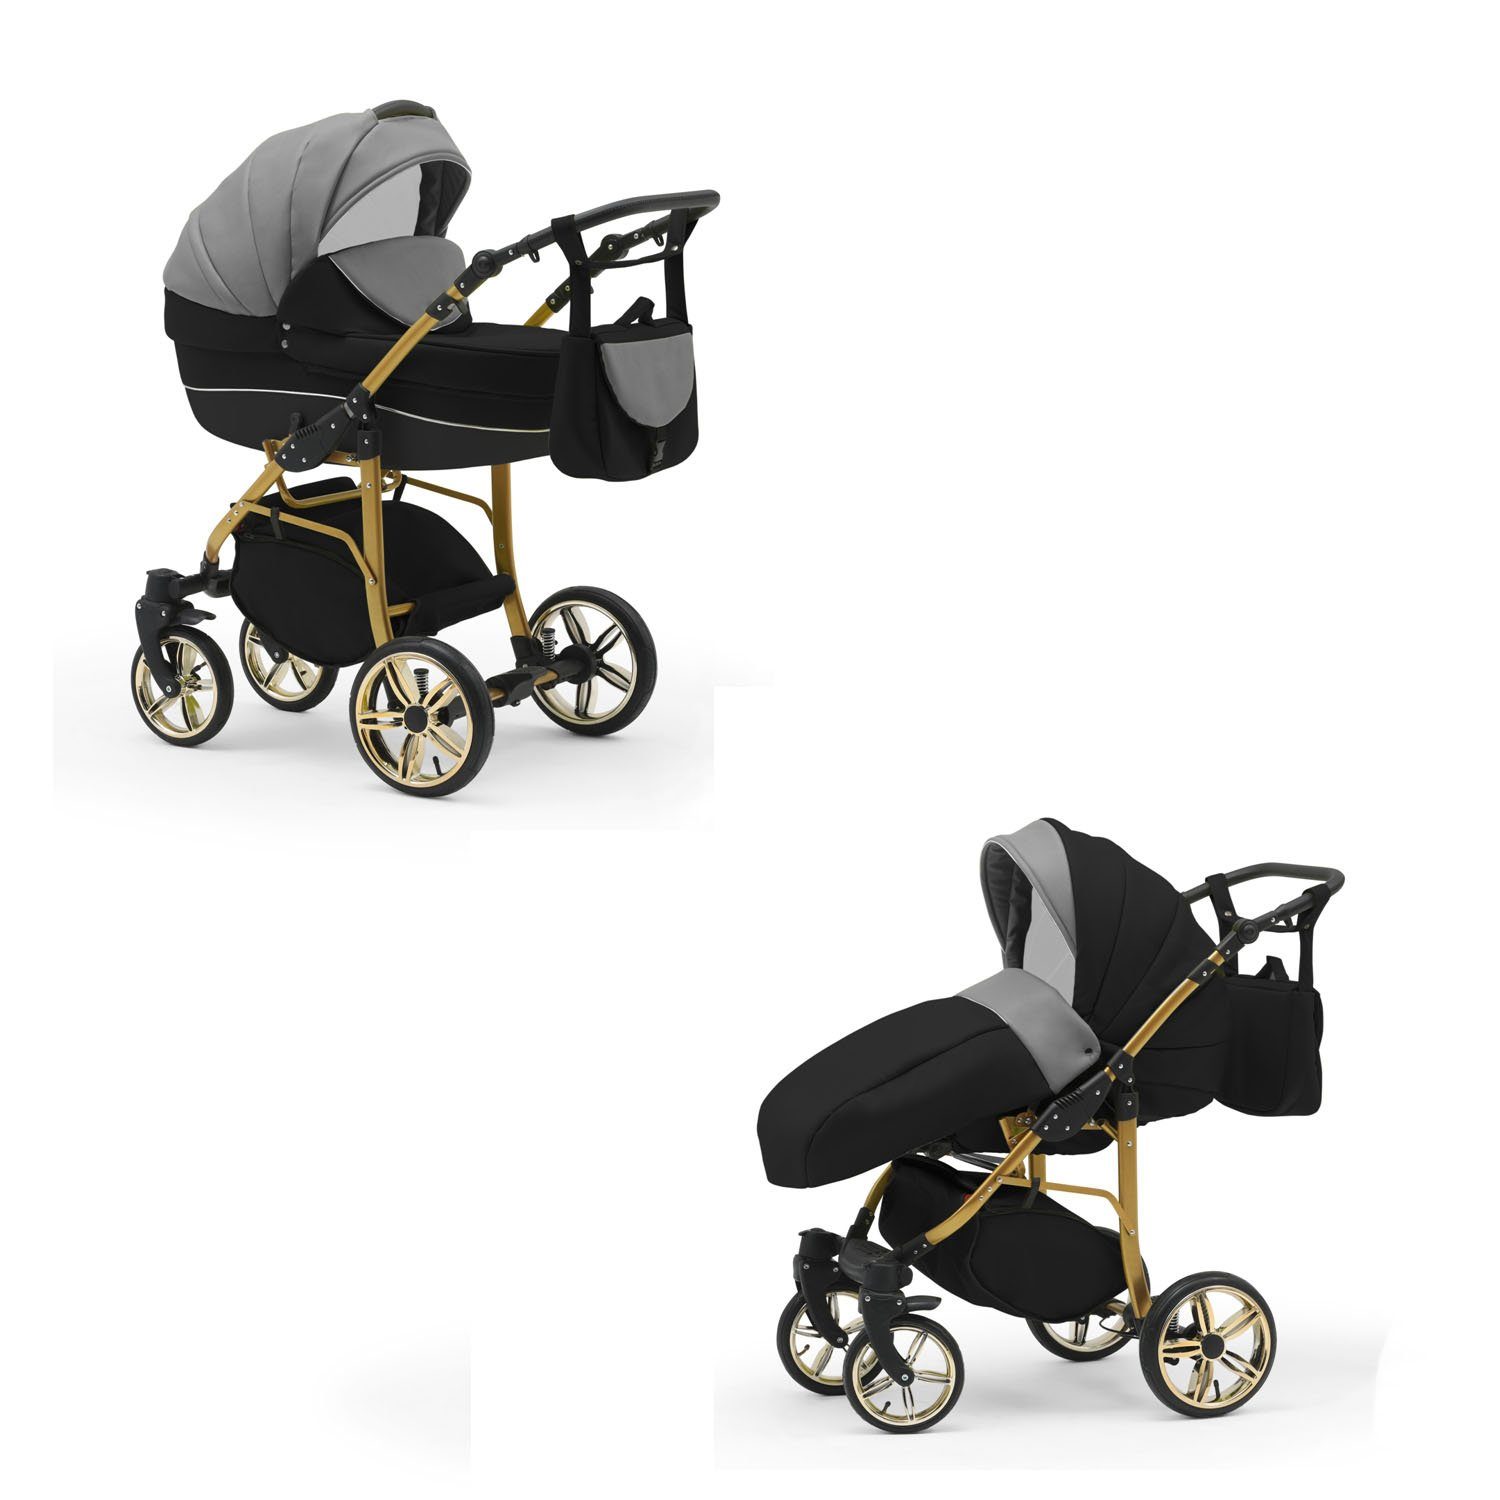 babies-on-wheels Kombi-Kinderwagen 2 in Teile Kinderwagen-Set Gold Cosmo 13 1 - 46 in Grau-Schwarz-Schwarz Farben 